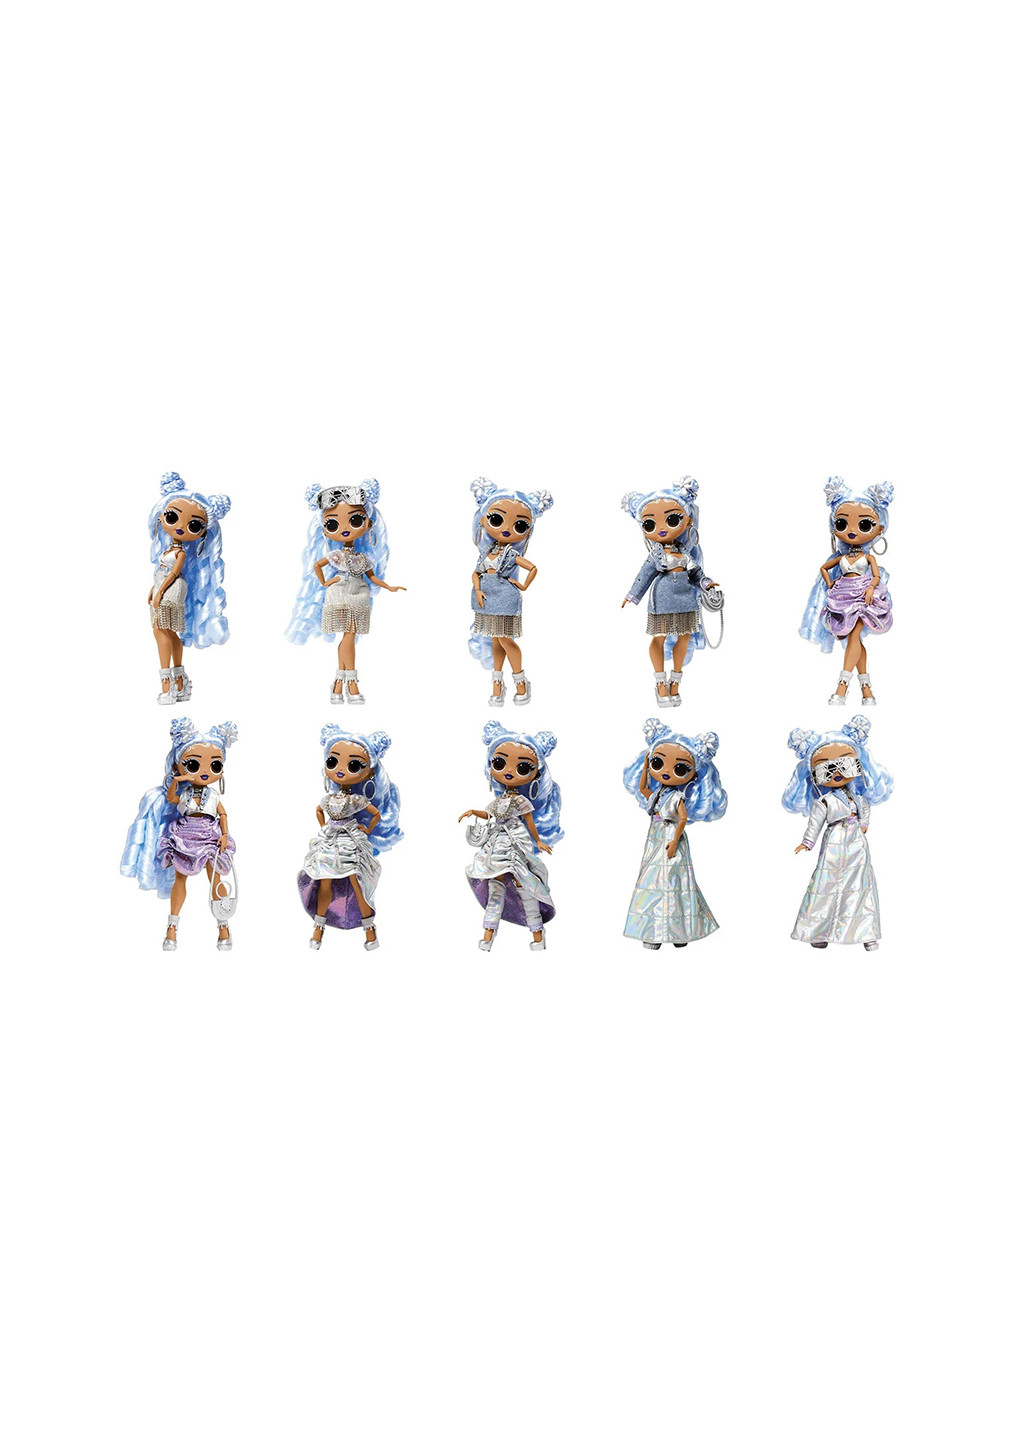 Игровой набор с куклой серии "O.M.G. Fashion Show" – СТИЛЬНАЯ МИССИ ФРОСТ L.O.L. Surprise! 584315 (255292884)